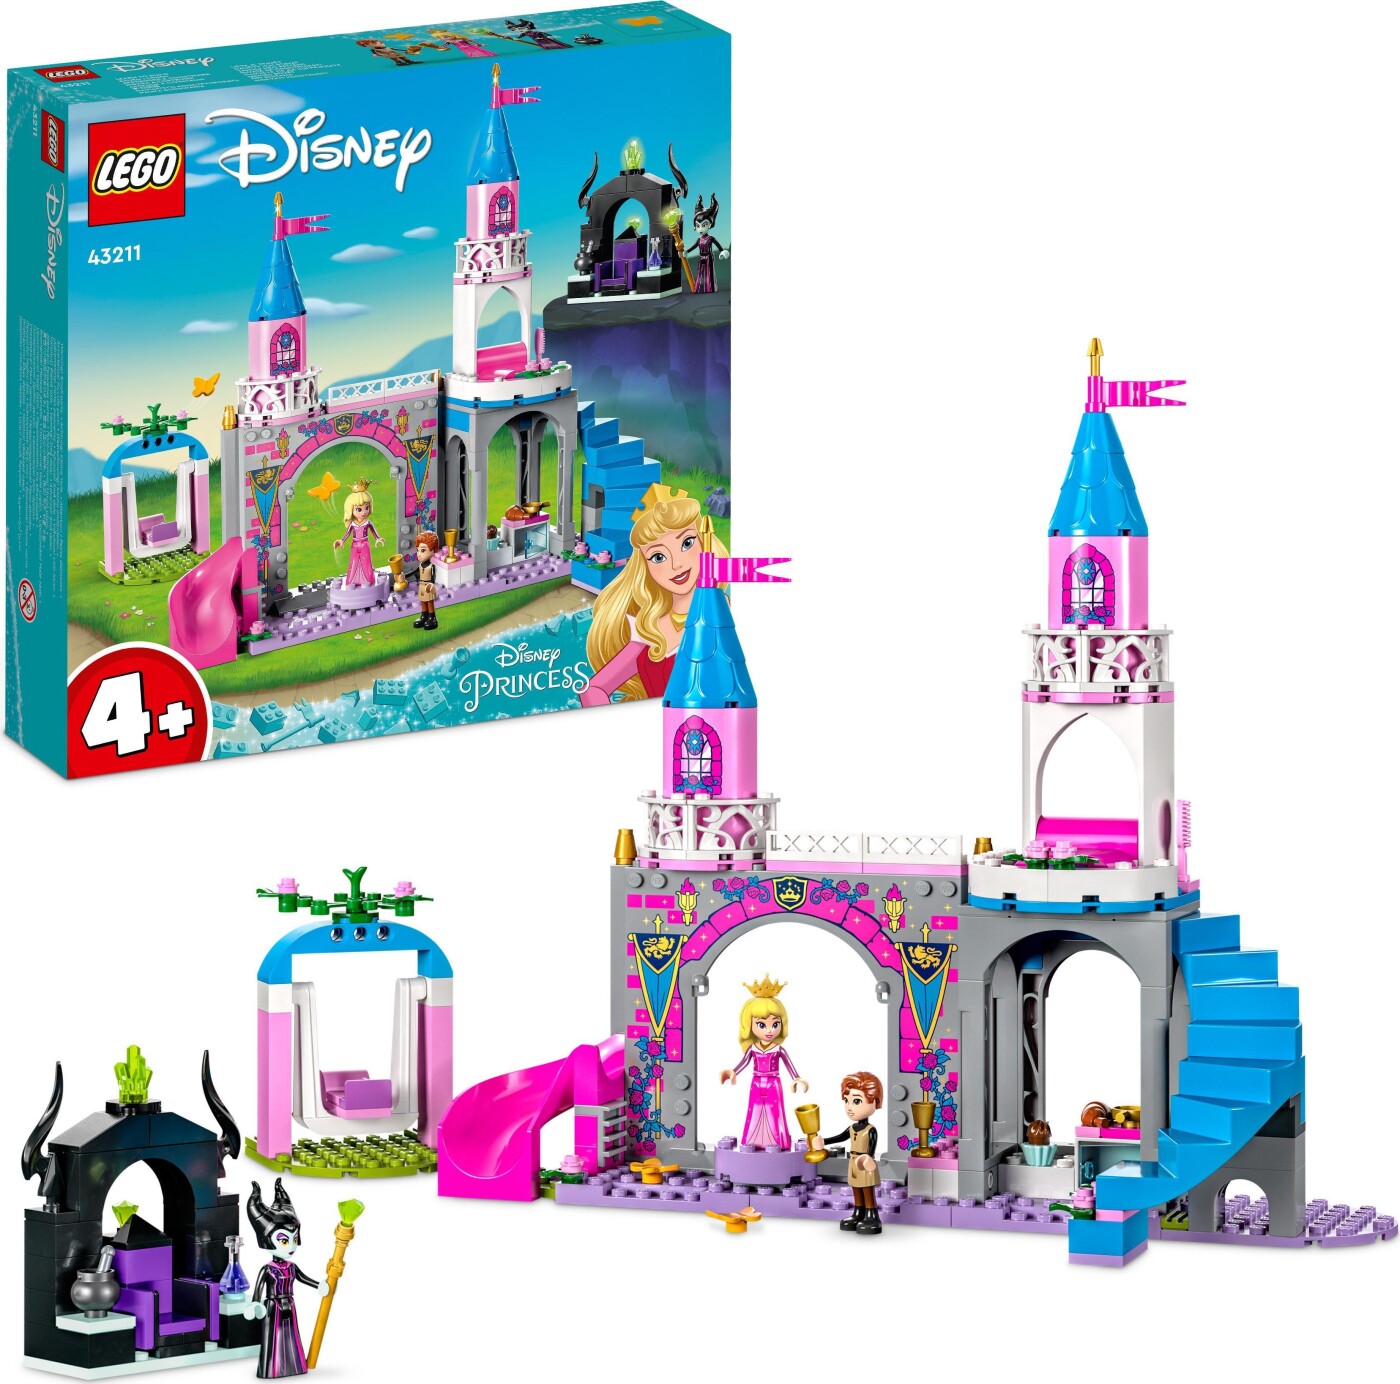 Billede af Lego Disney Princess - Torneroses Slot - 43211